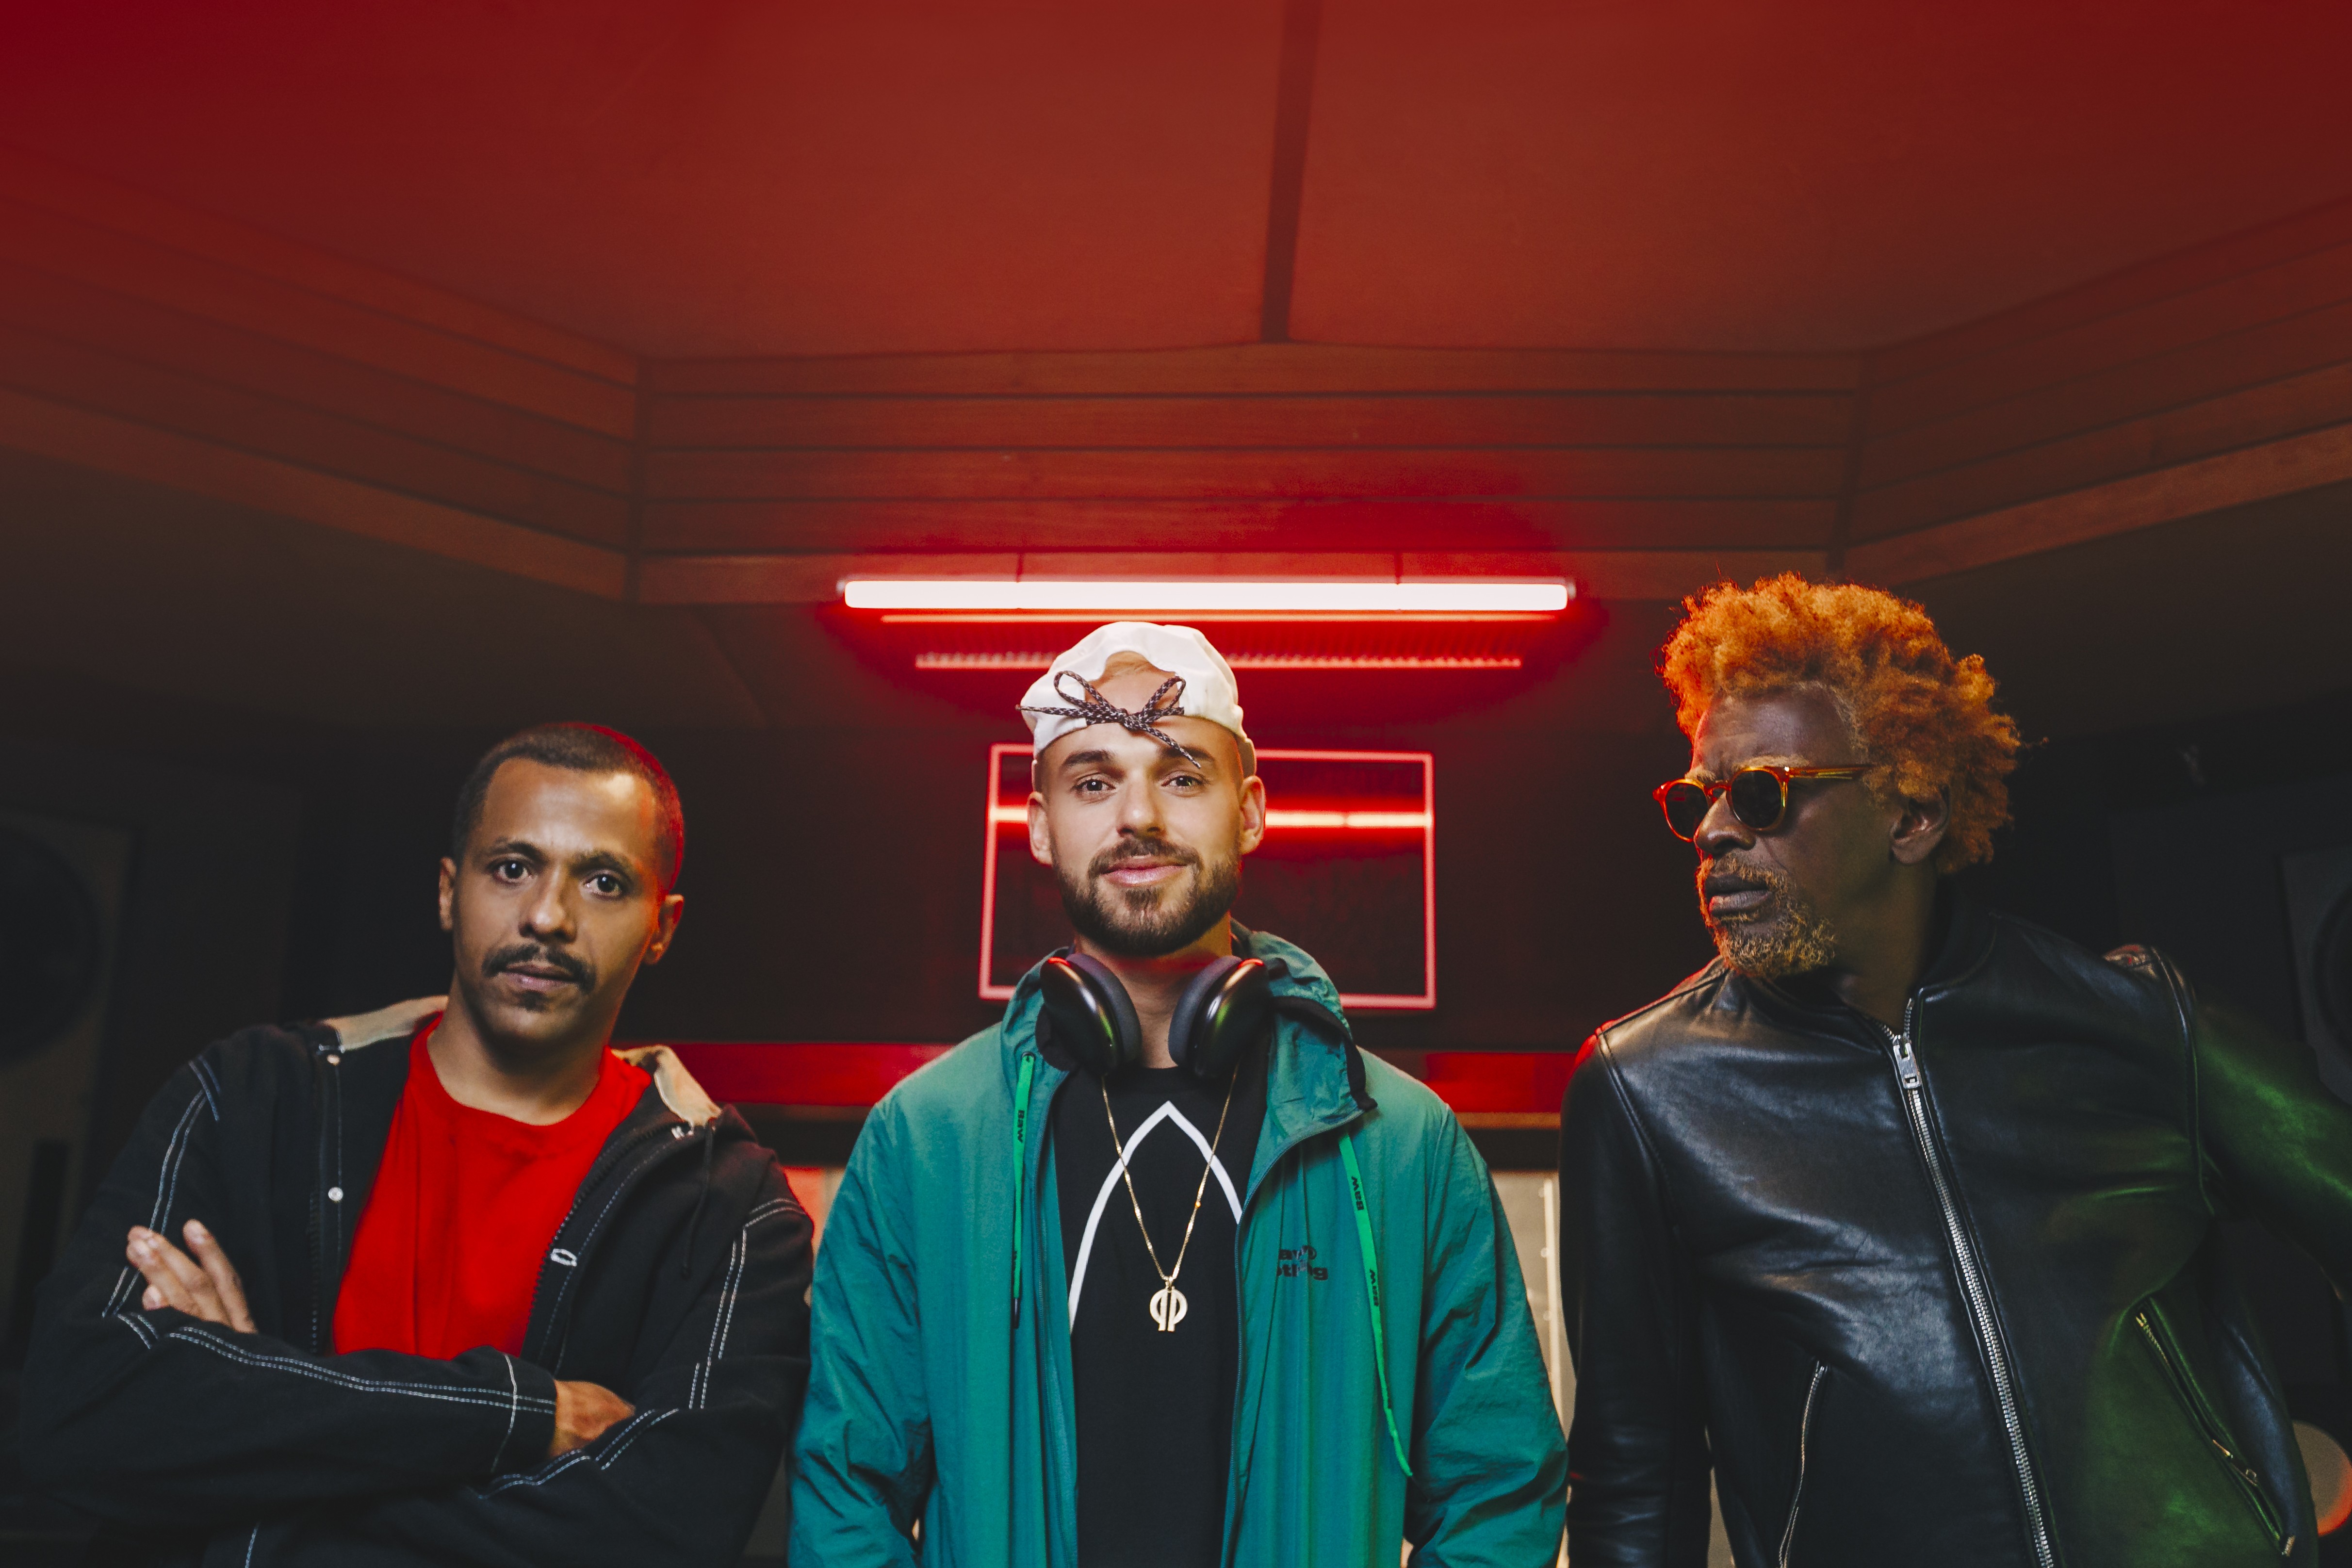 Black Alien, Papatinho e Seu Jorge lançam 'Final de semana'